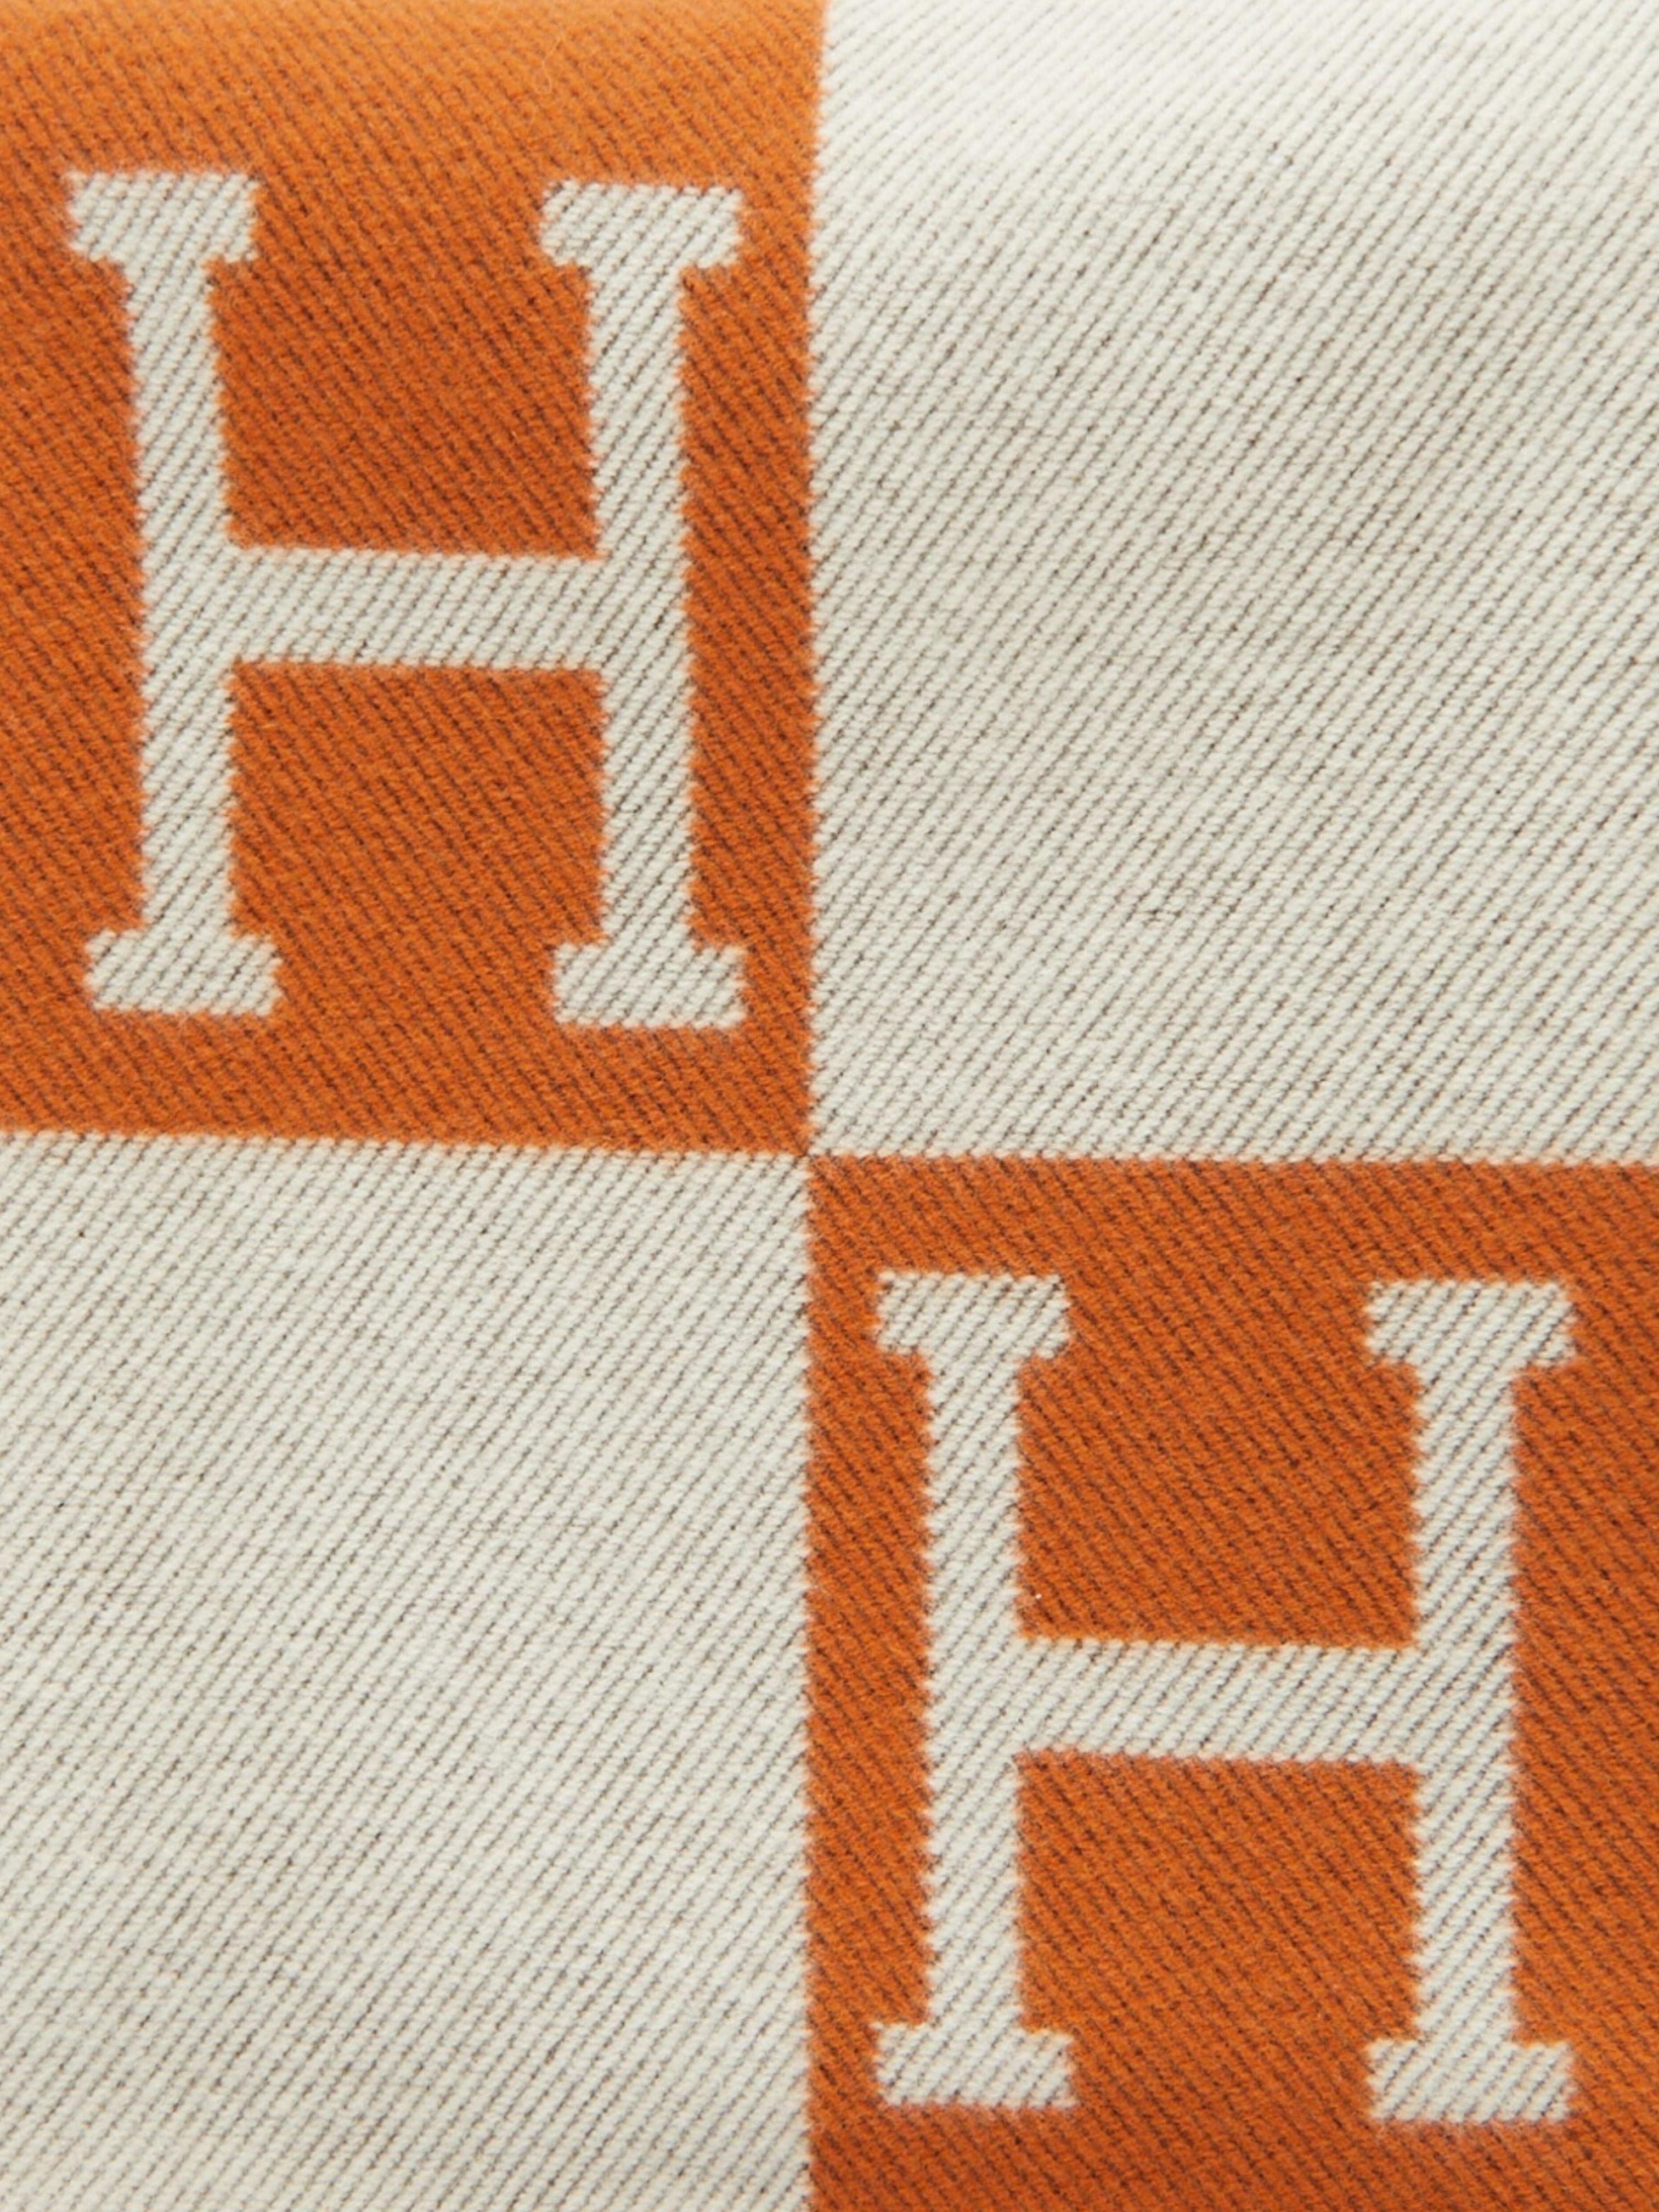 Plaid Hermès Avalon en laine mérinos et cachemire (90% laine mérinos, 10% cachemire)

Ecru/Poitron

Fabriqué en Grande-Bretagne

Dimensions : L 135 x H 170 cm 